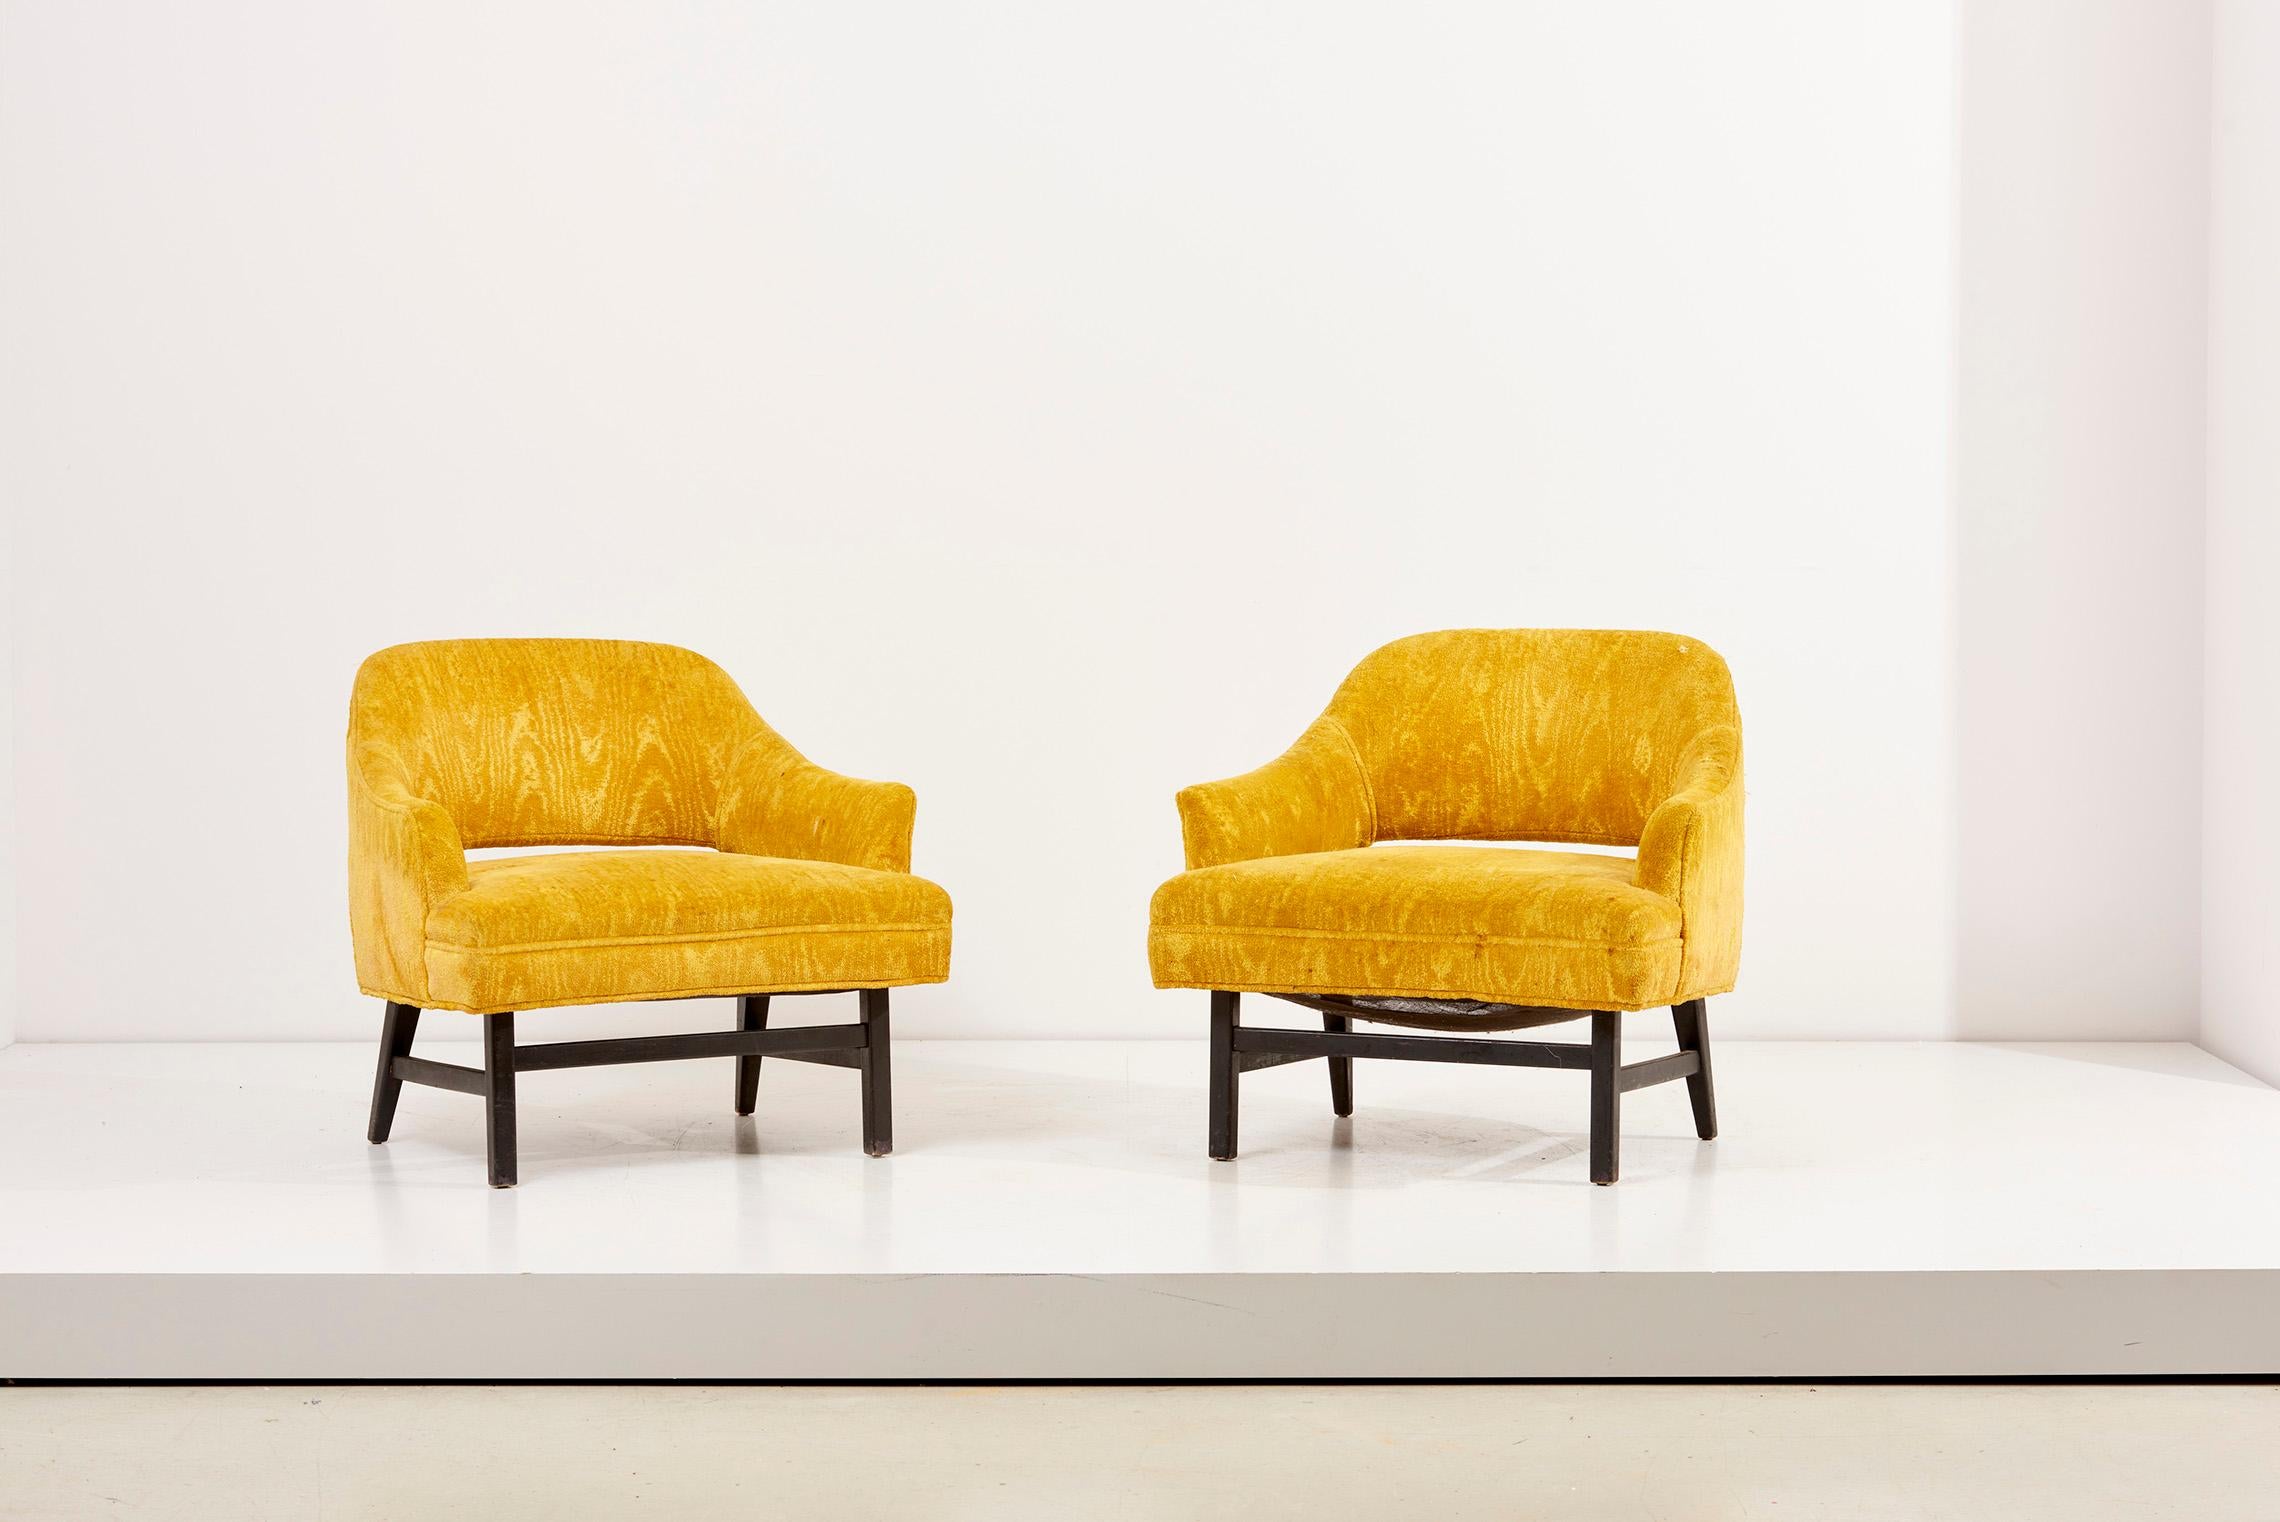 Ein Paar Harvey Probber Loungesessel mit gelber Polsterung. 
Die Stühle sind im Vintage-Stil gepolstert.